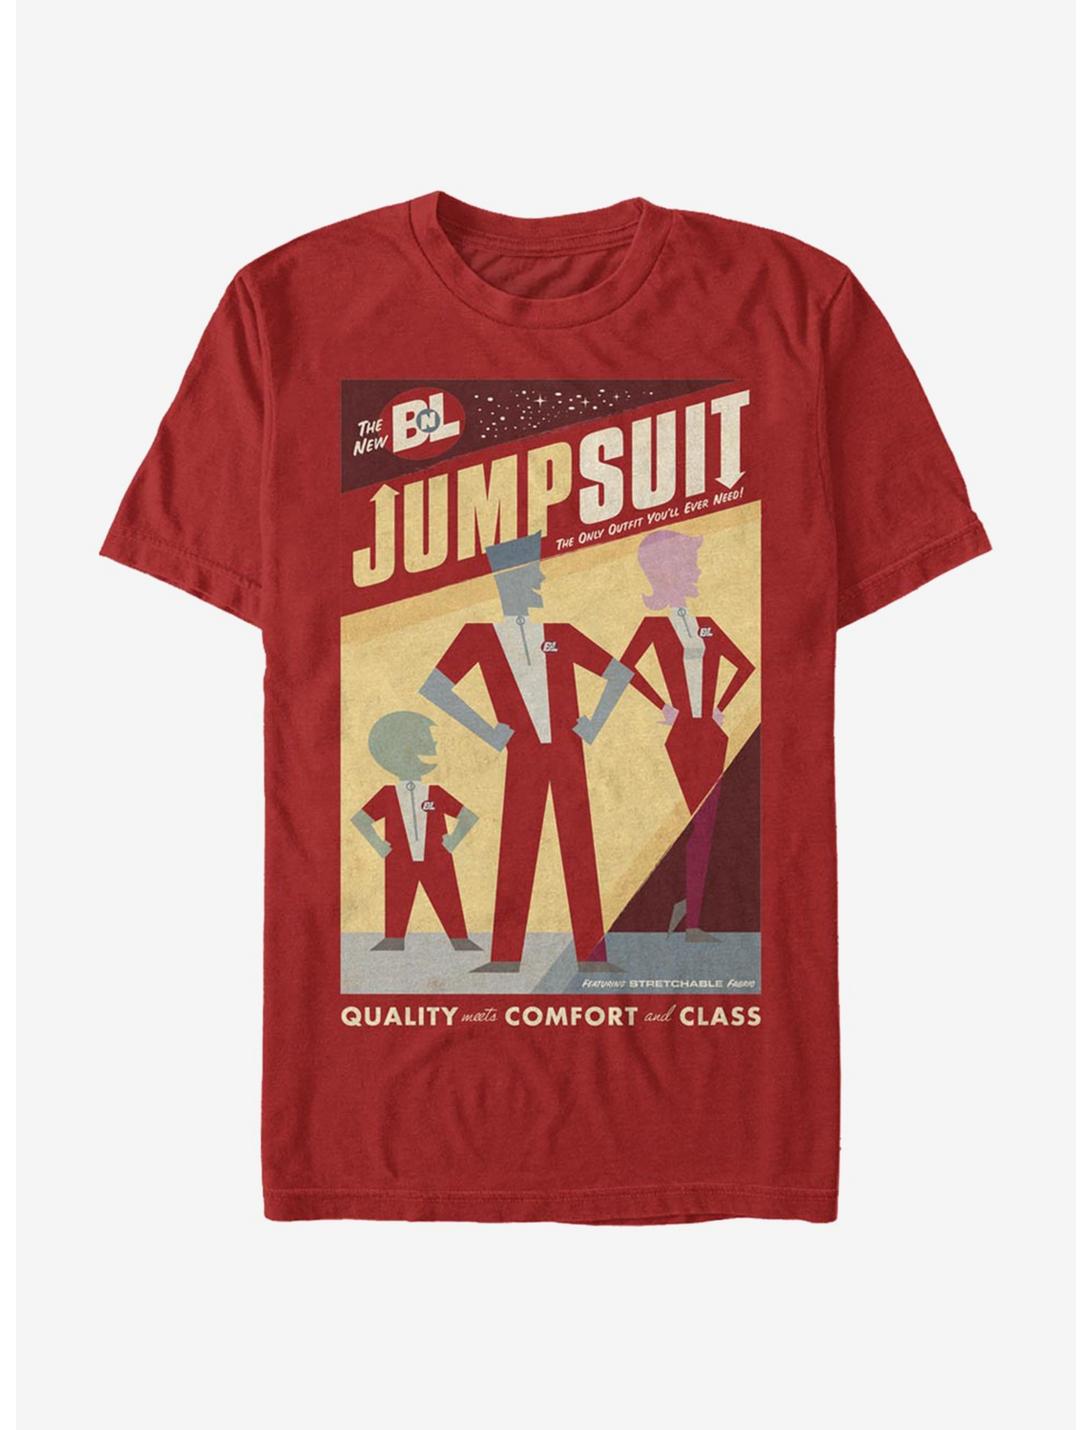 Disney Pixar Wall-E New Jumpsuit Poster T-Shirt, RED, hi-res